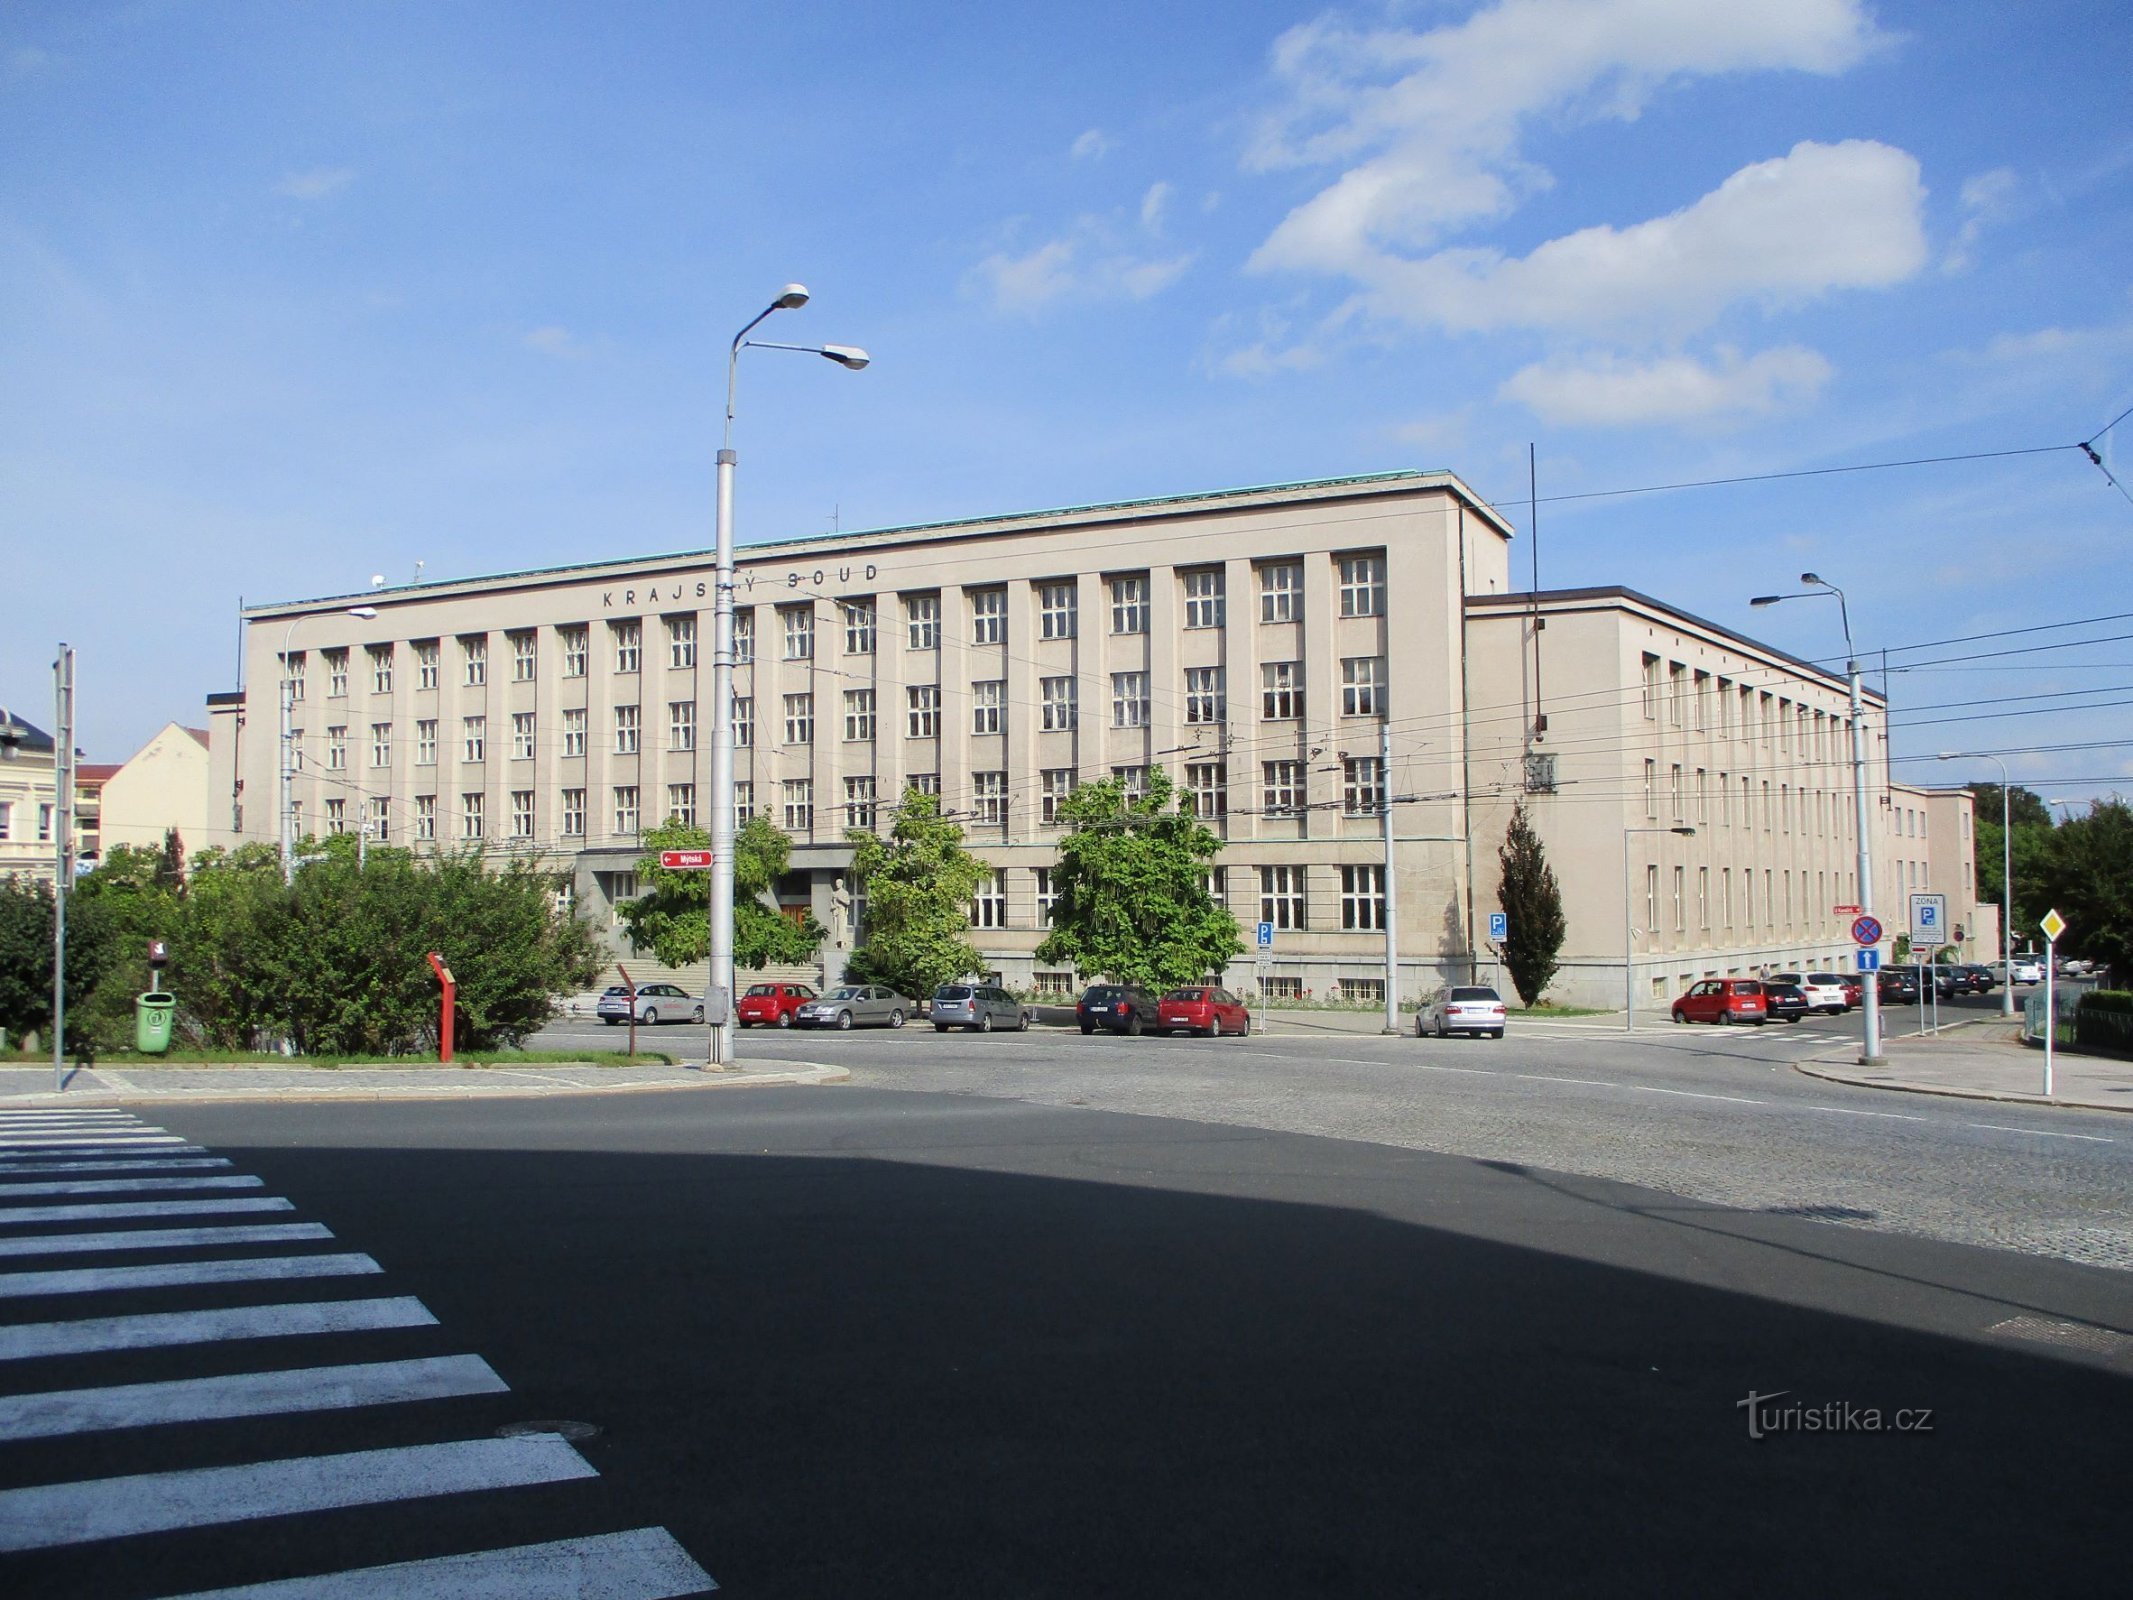 Окружной суд (Градец Кралове, 15.9.2019)